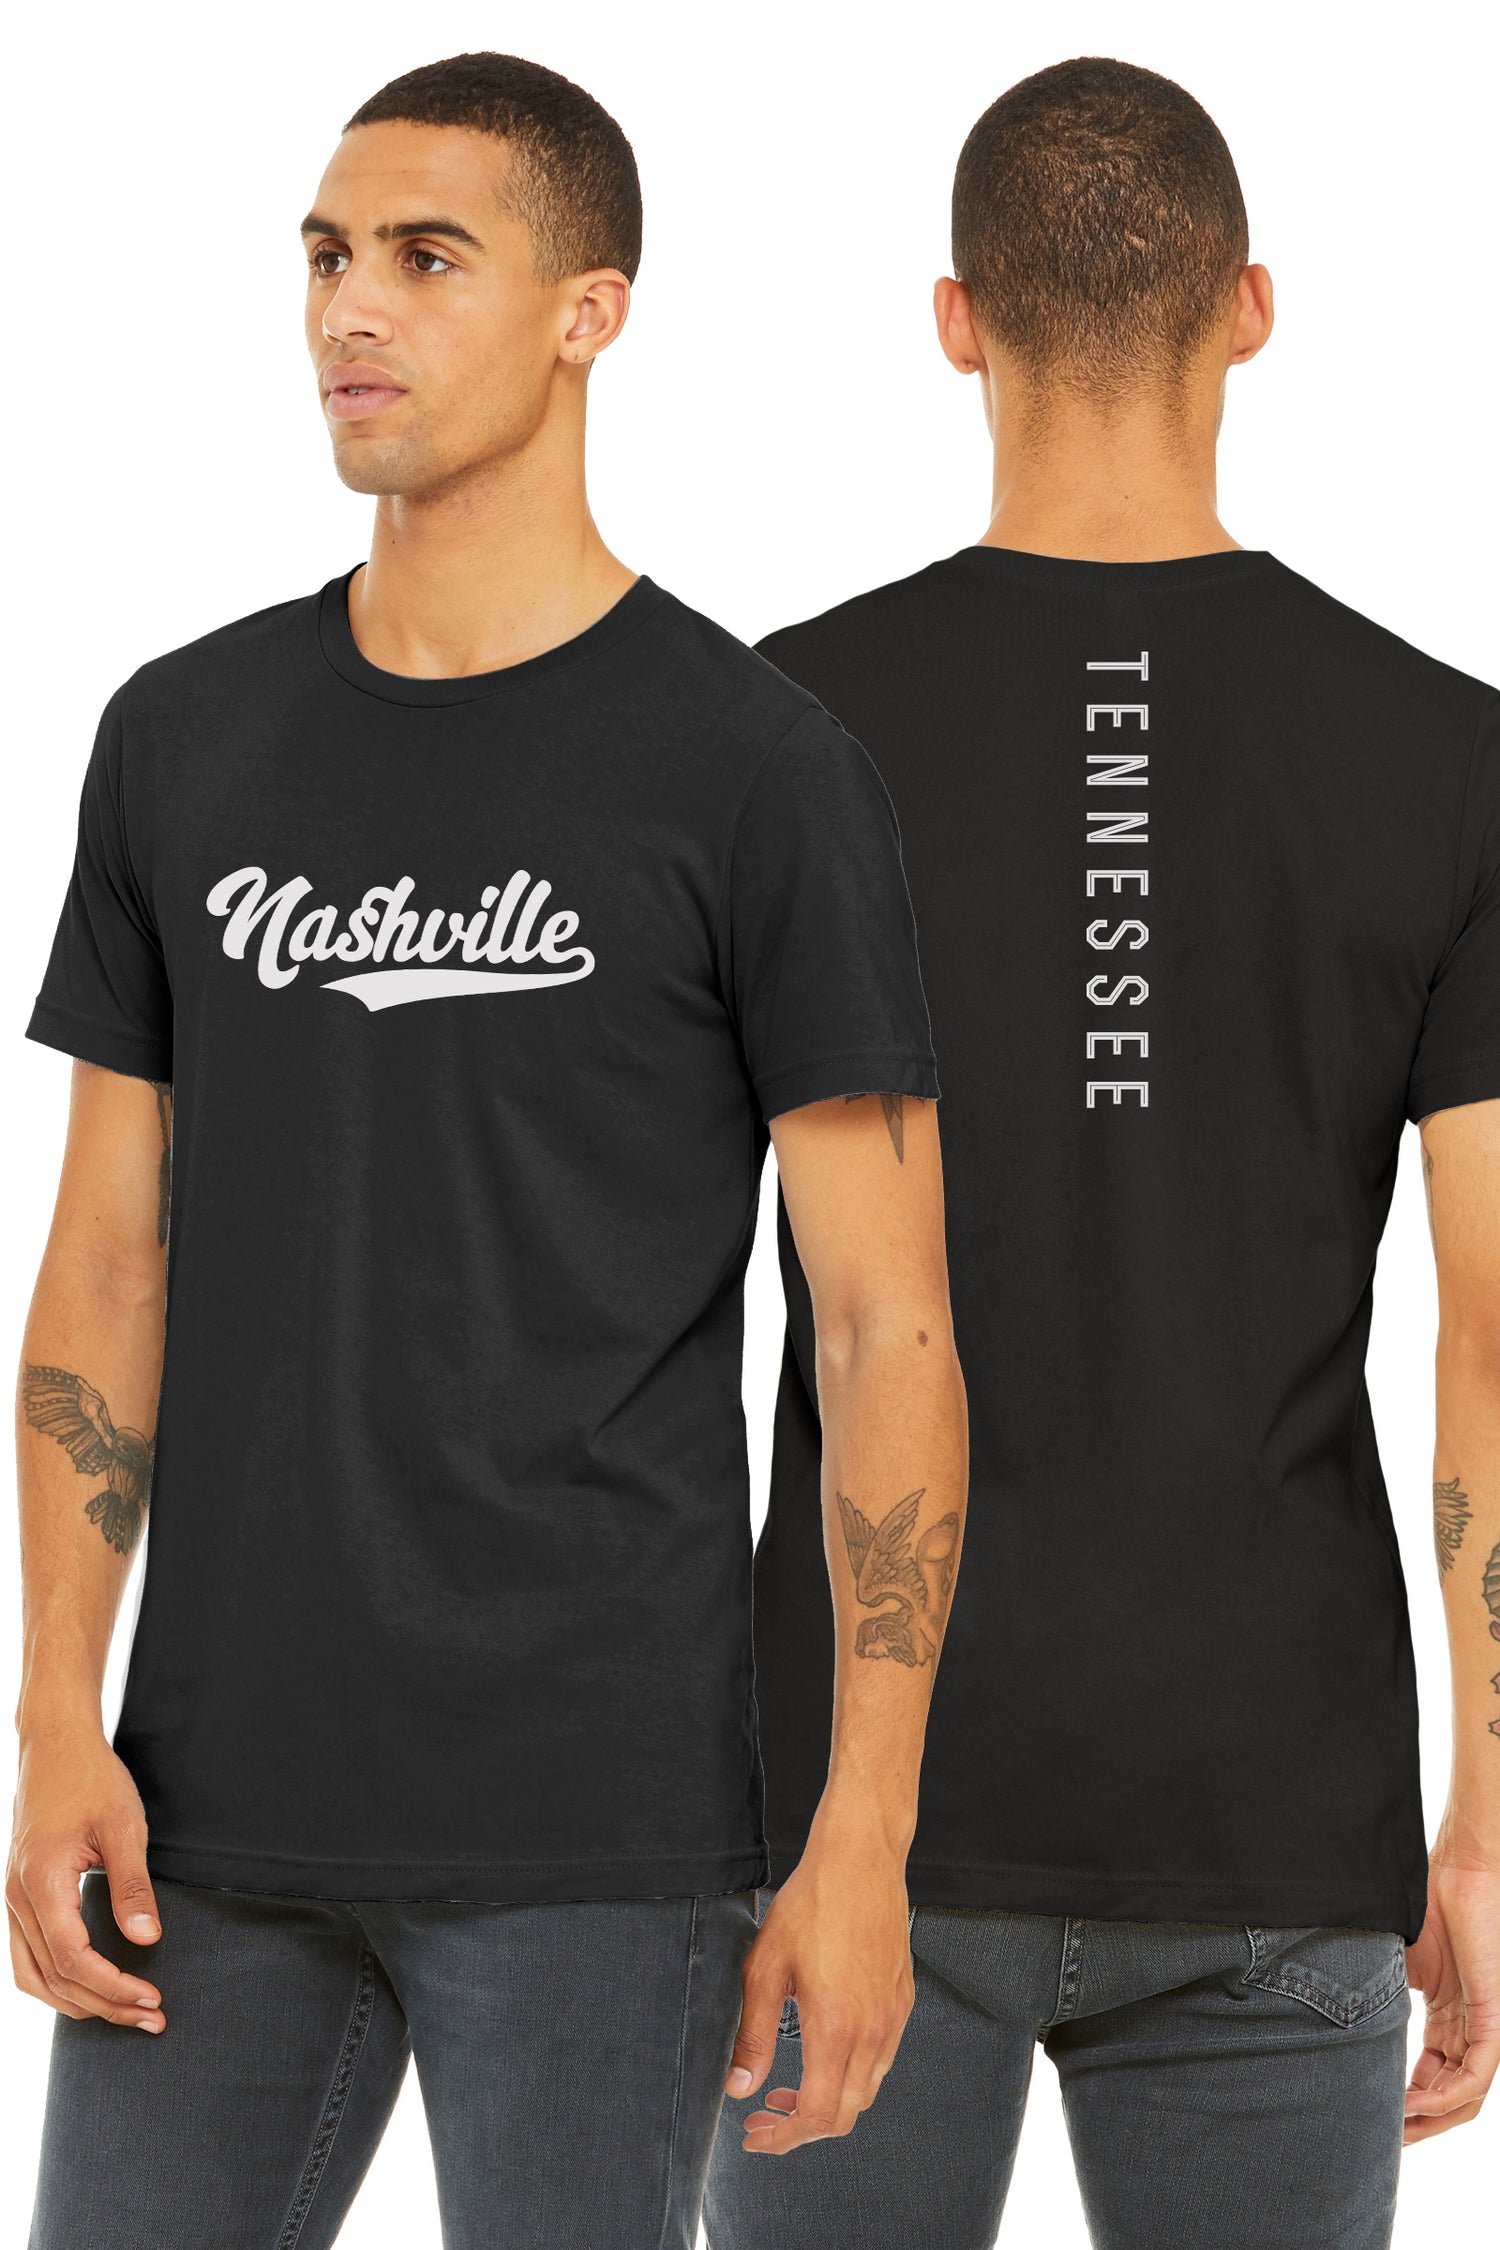 Nashville Clothing